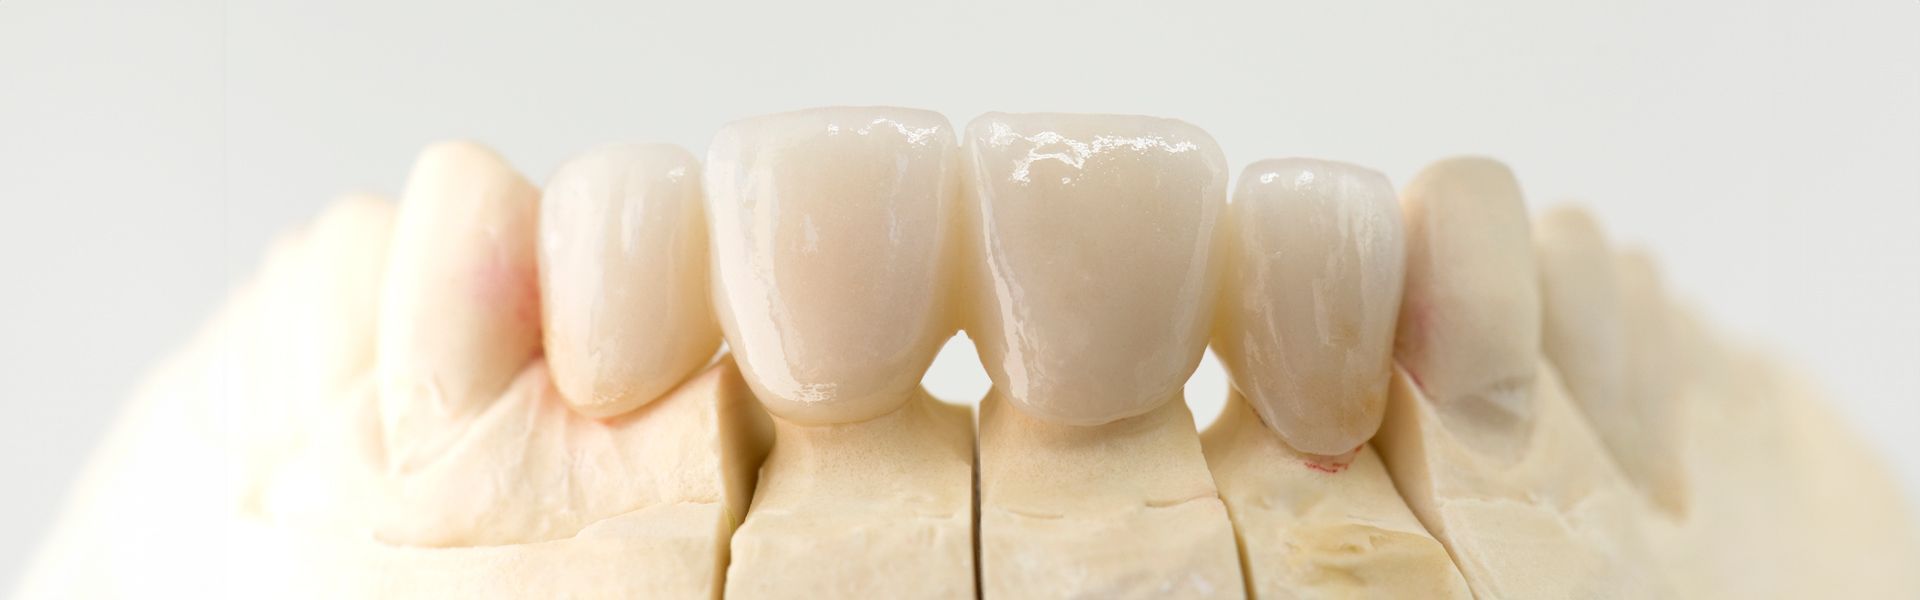 Eine Nahaufnahme eines Modells der Zähne einer Person auf weißem Hintergrund | Zahnmedizin am Neckar